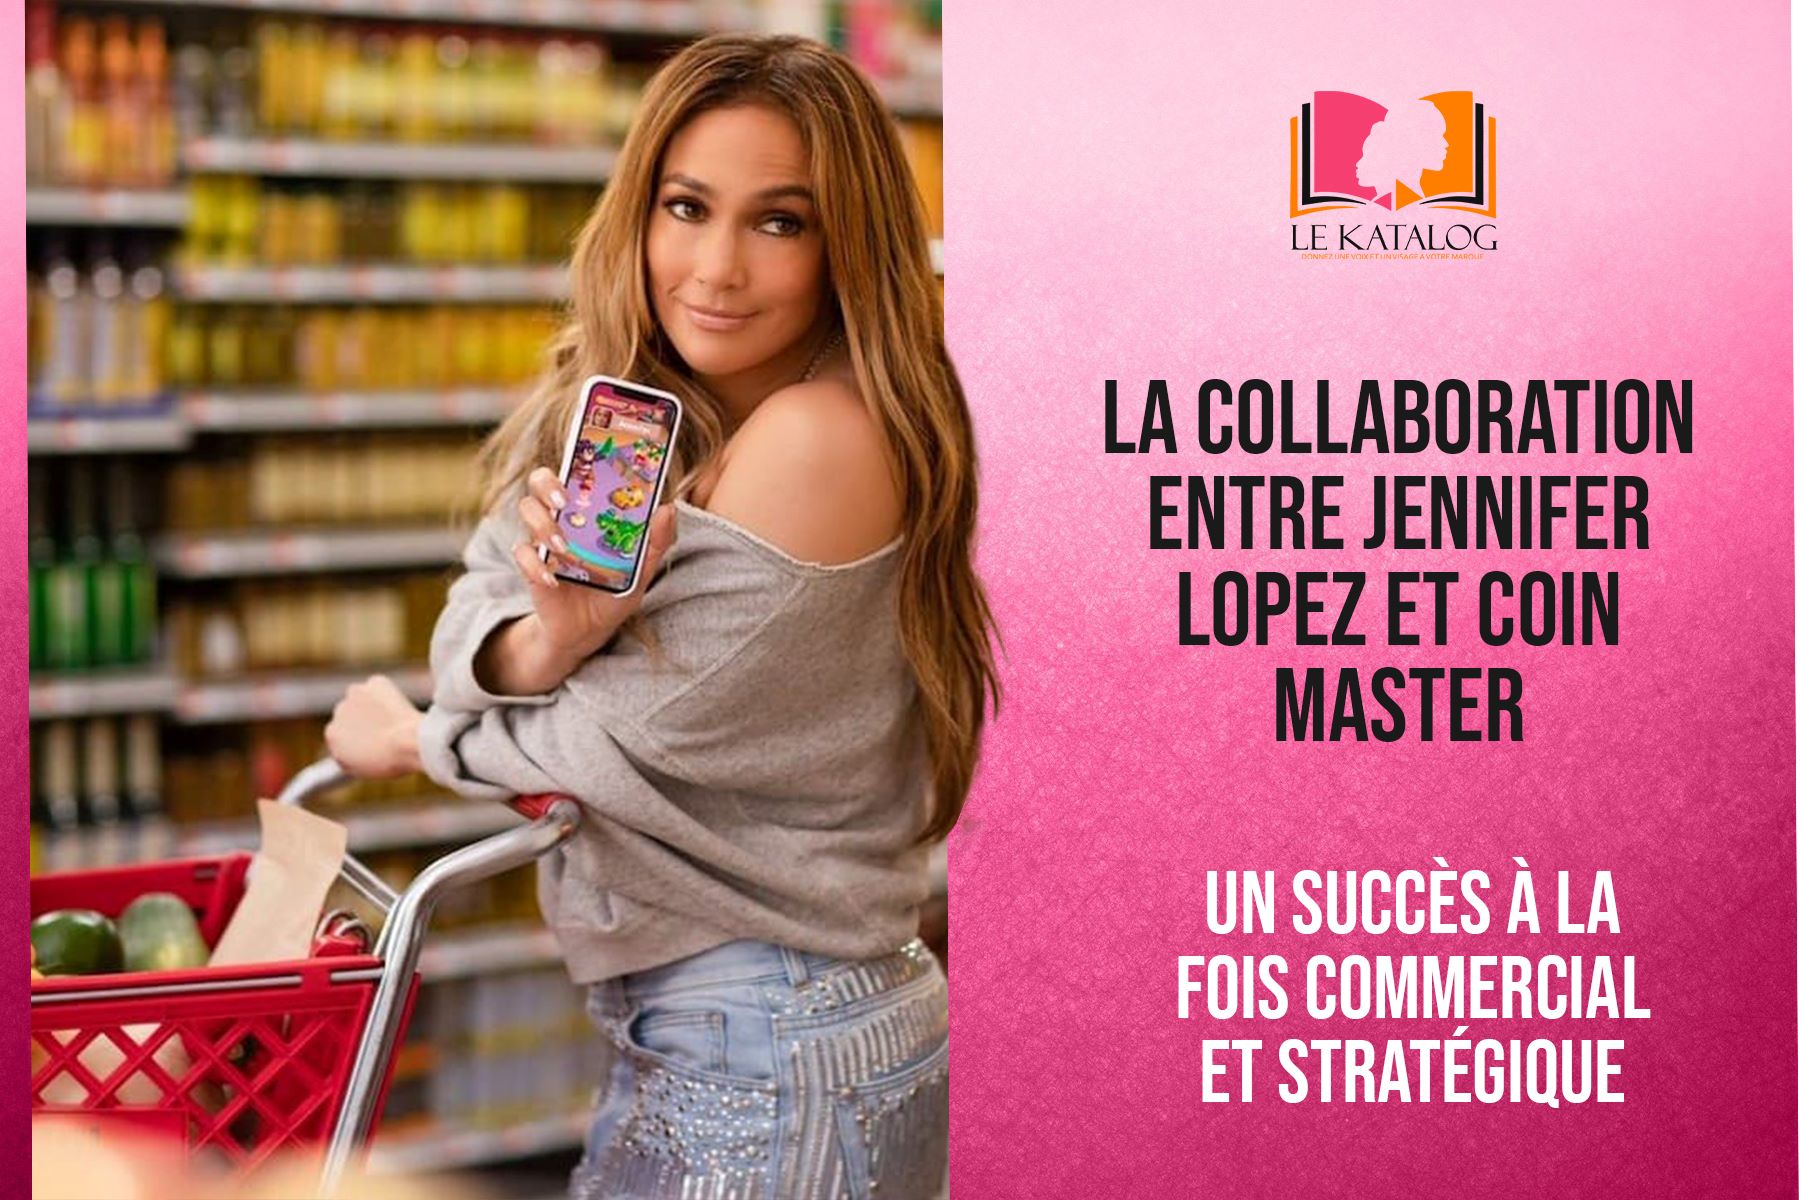 La Collaboration Entre Jennifer Lopez Et Coin Master Un Succ S Commercial Le Katalog